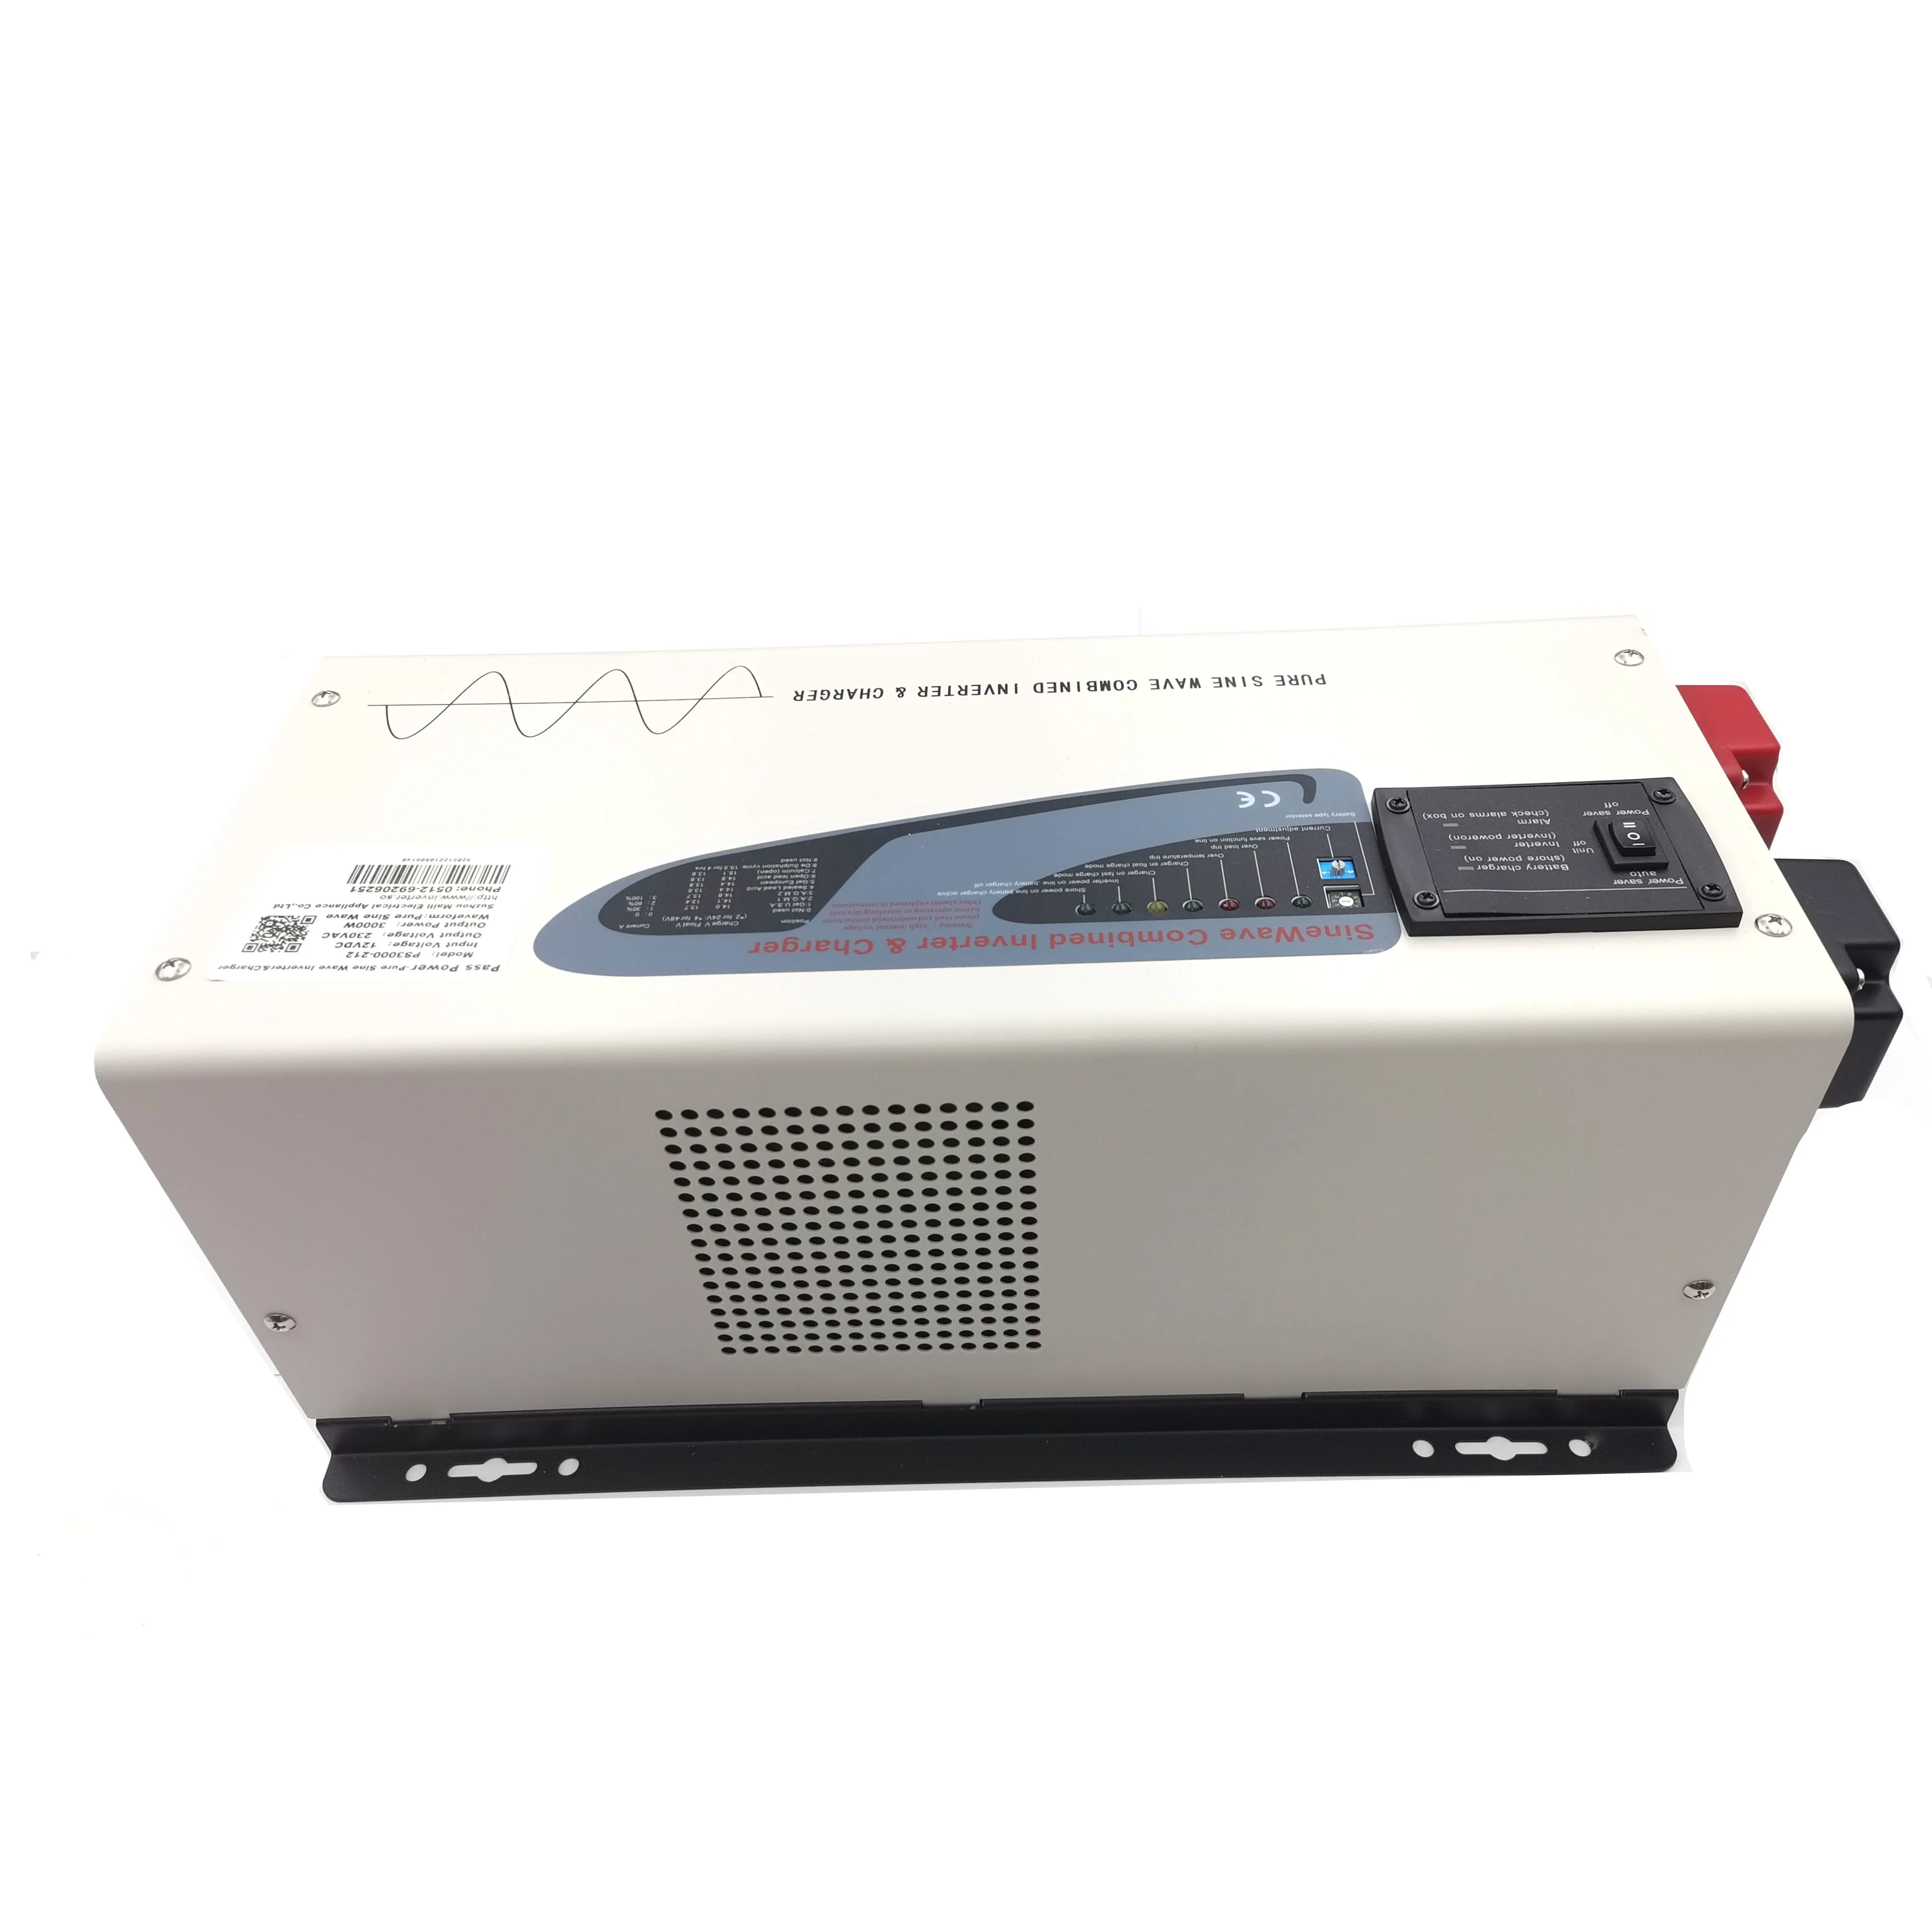 

Hot Sale 3000w pure sine wave inverter off grid solar power inversor 12v/24v110v/240v voltage converte with external LCD display